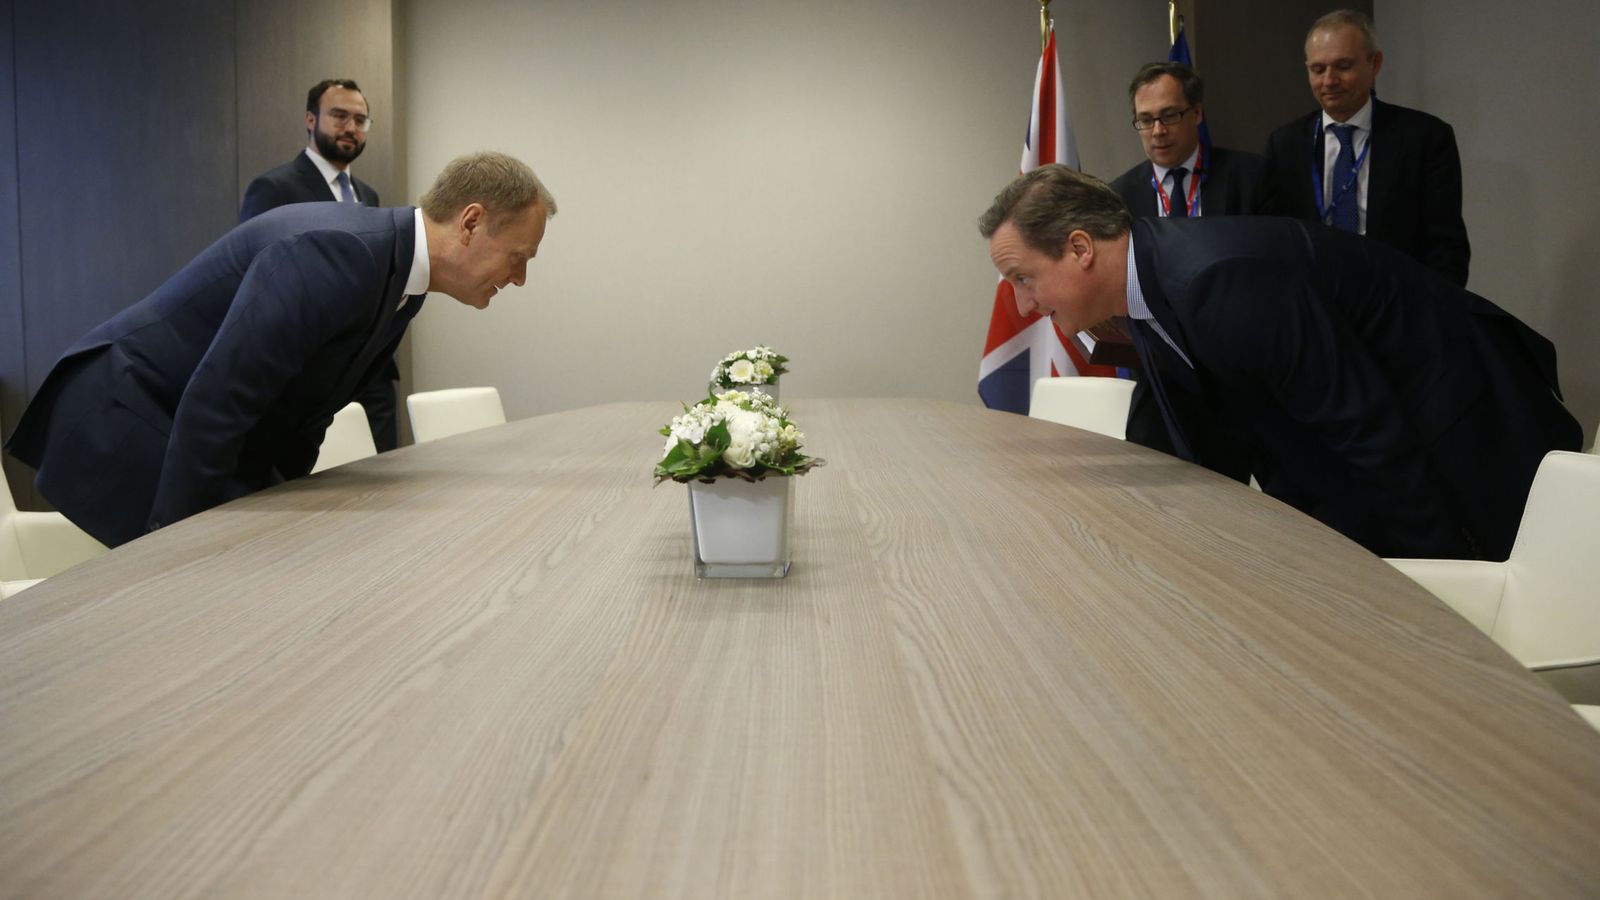 Foto: El primer ministro británico, David Cameron, y el presidente del Consejo europeo, Donald Tusk. (Reuters)